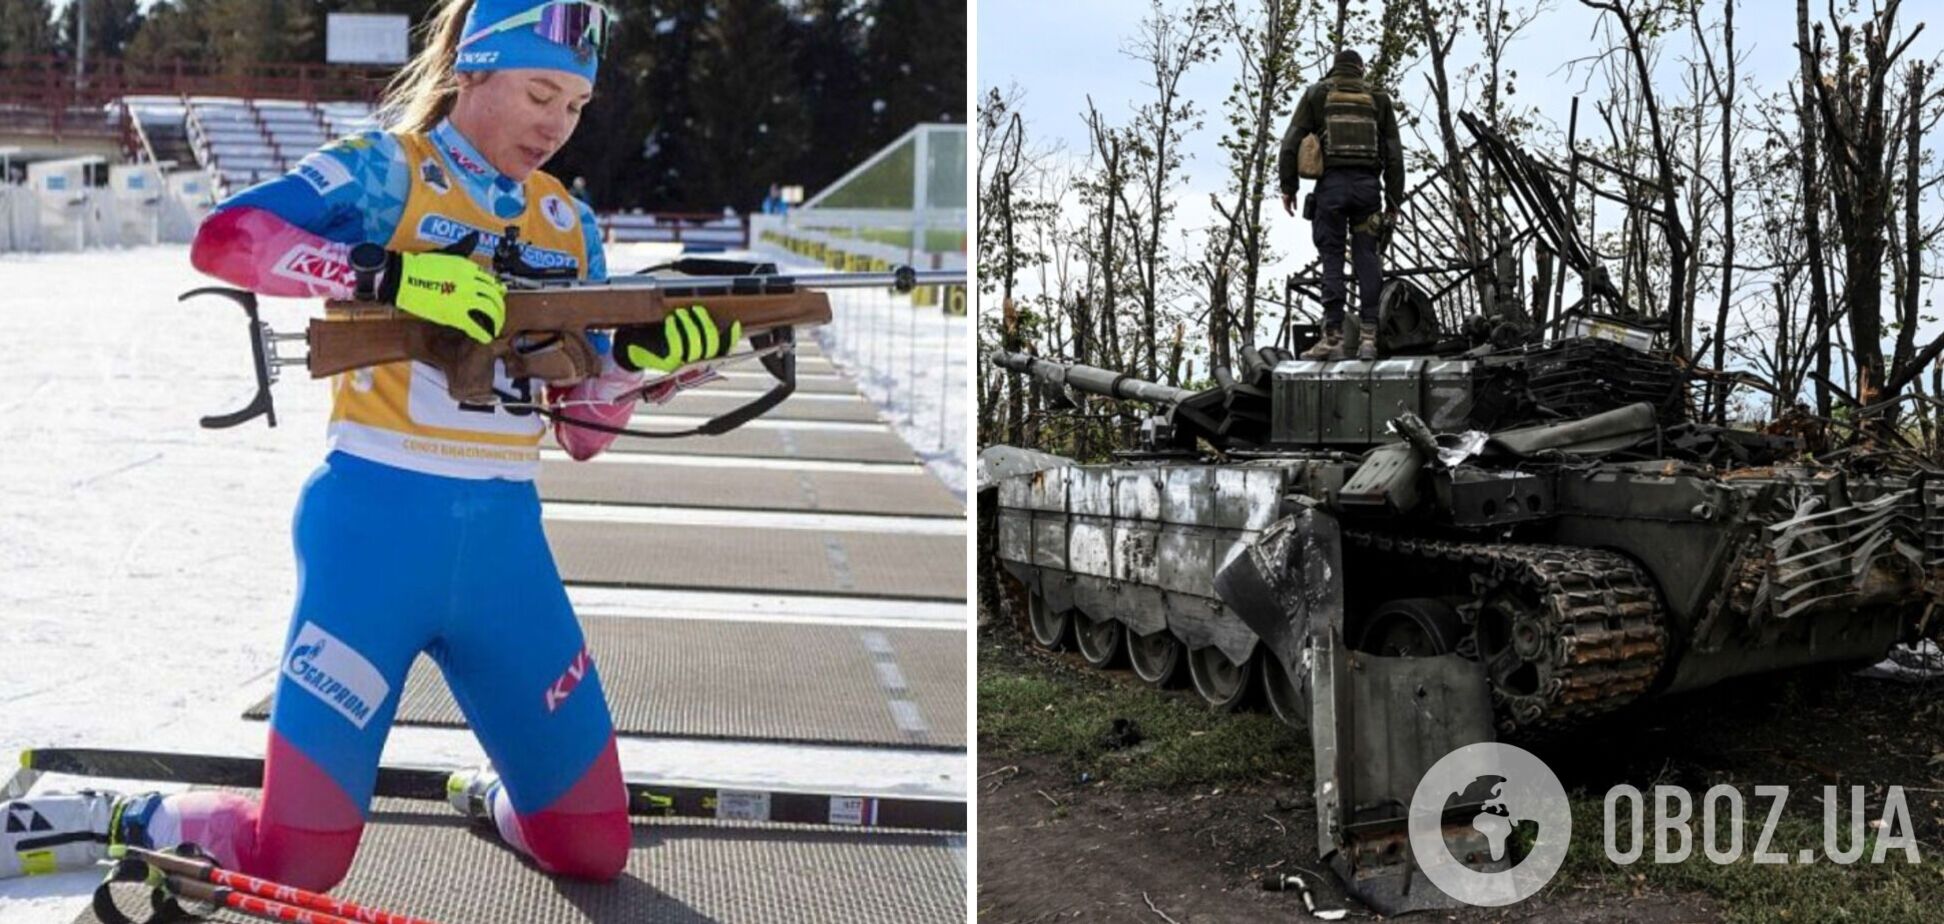 Отец биатлонистки сборной России приехал воевать Украину и был ликвидирован ВСУ